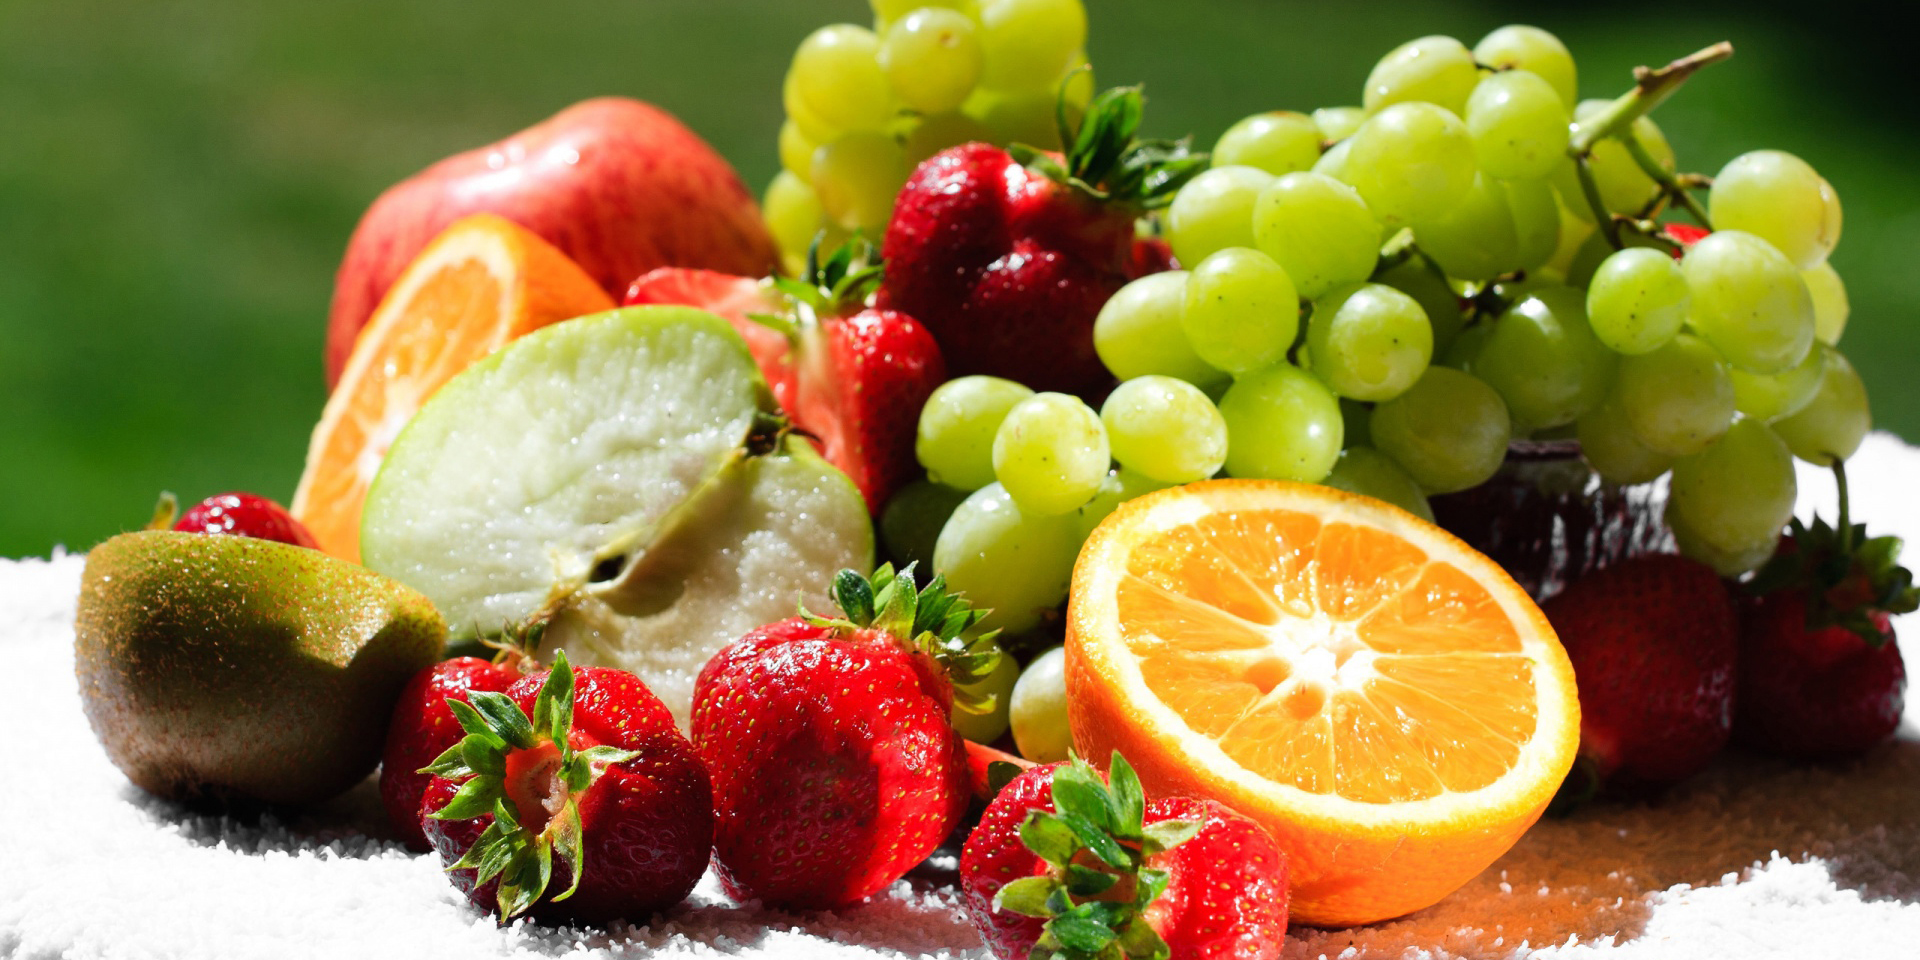 نرخ انواع میوه درجه یک در میادین میوه و تره بار